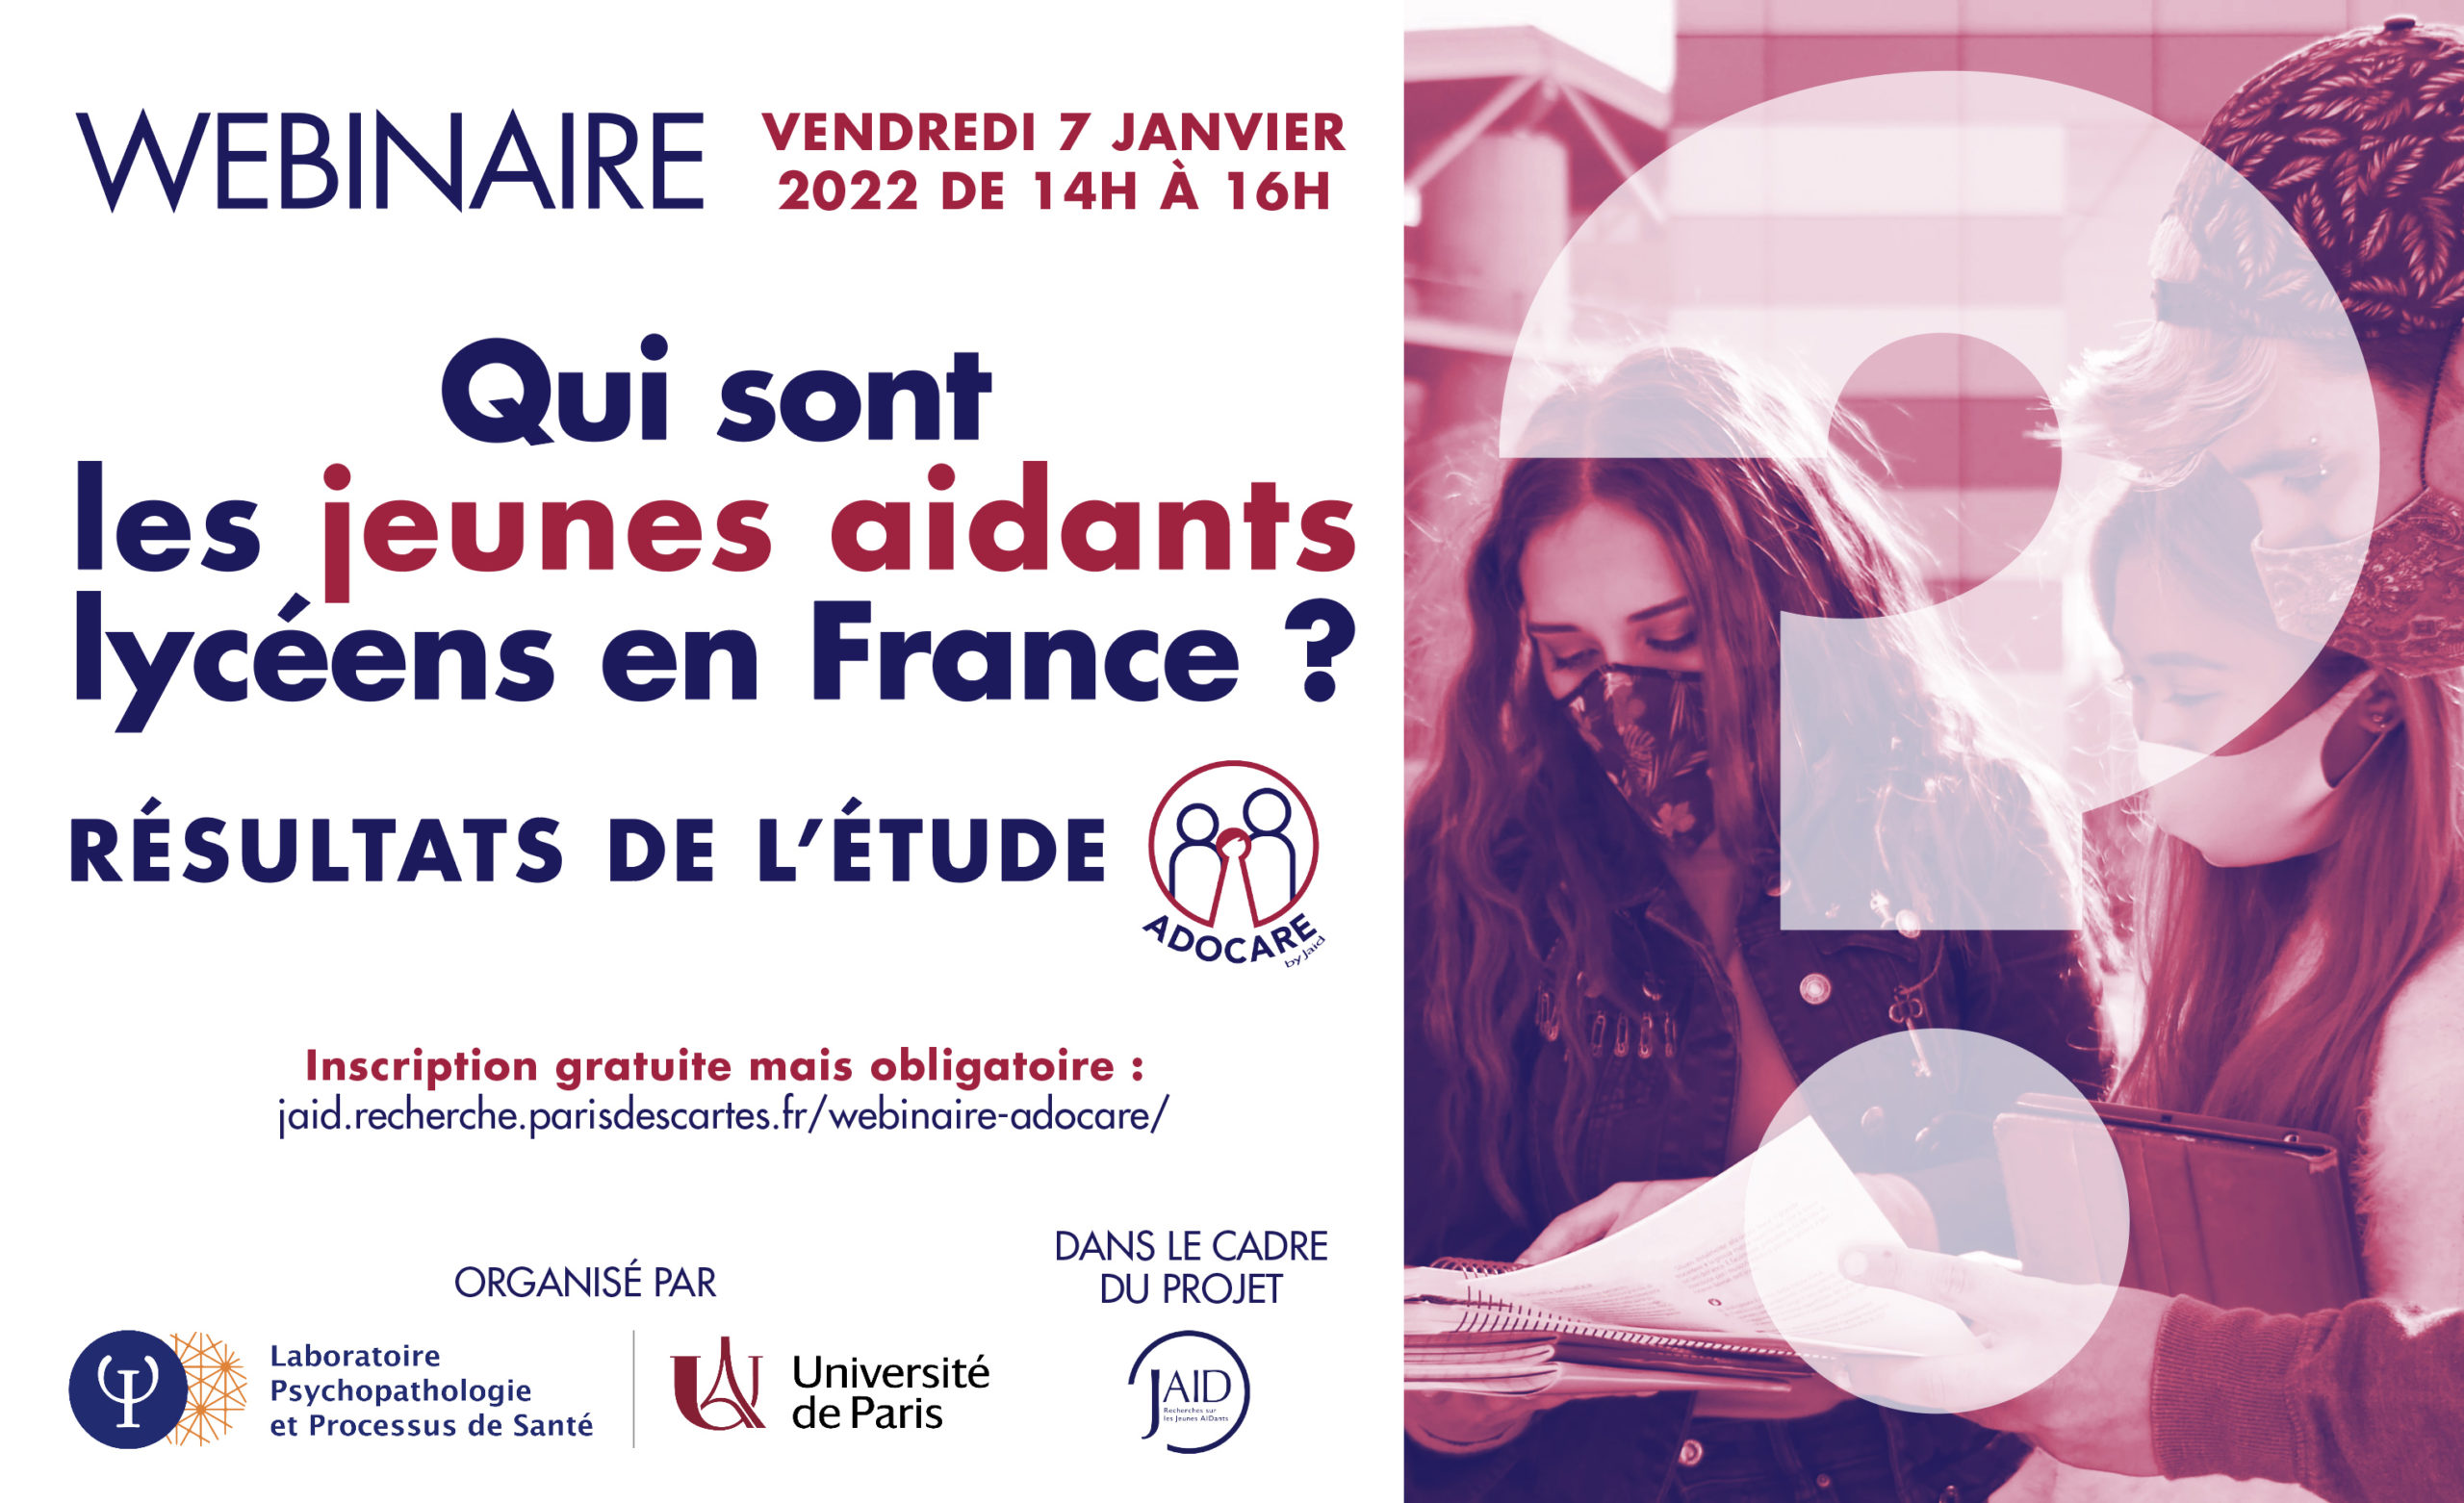 Webinaire du 7 janvier 2022 – Qui sont les jeunes aidants lycéens en France ?